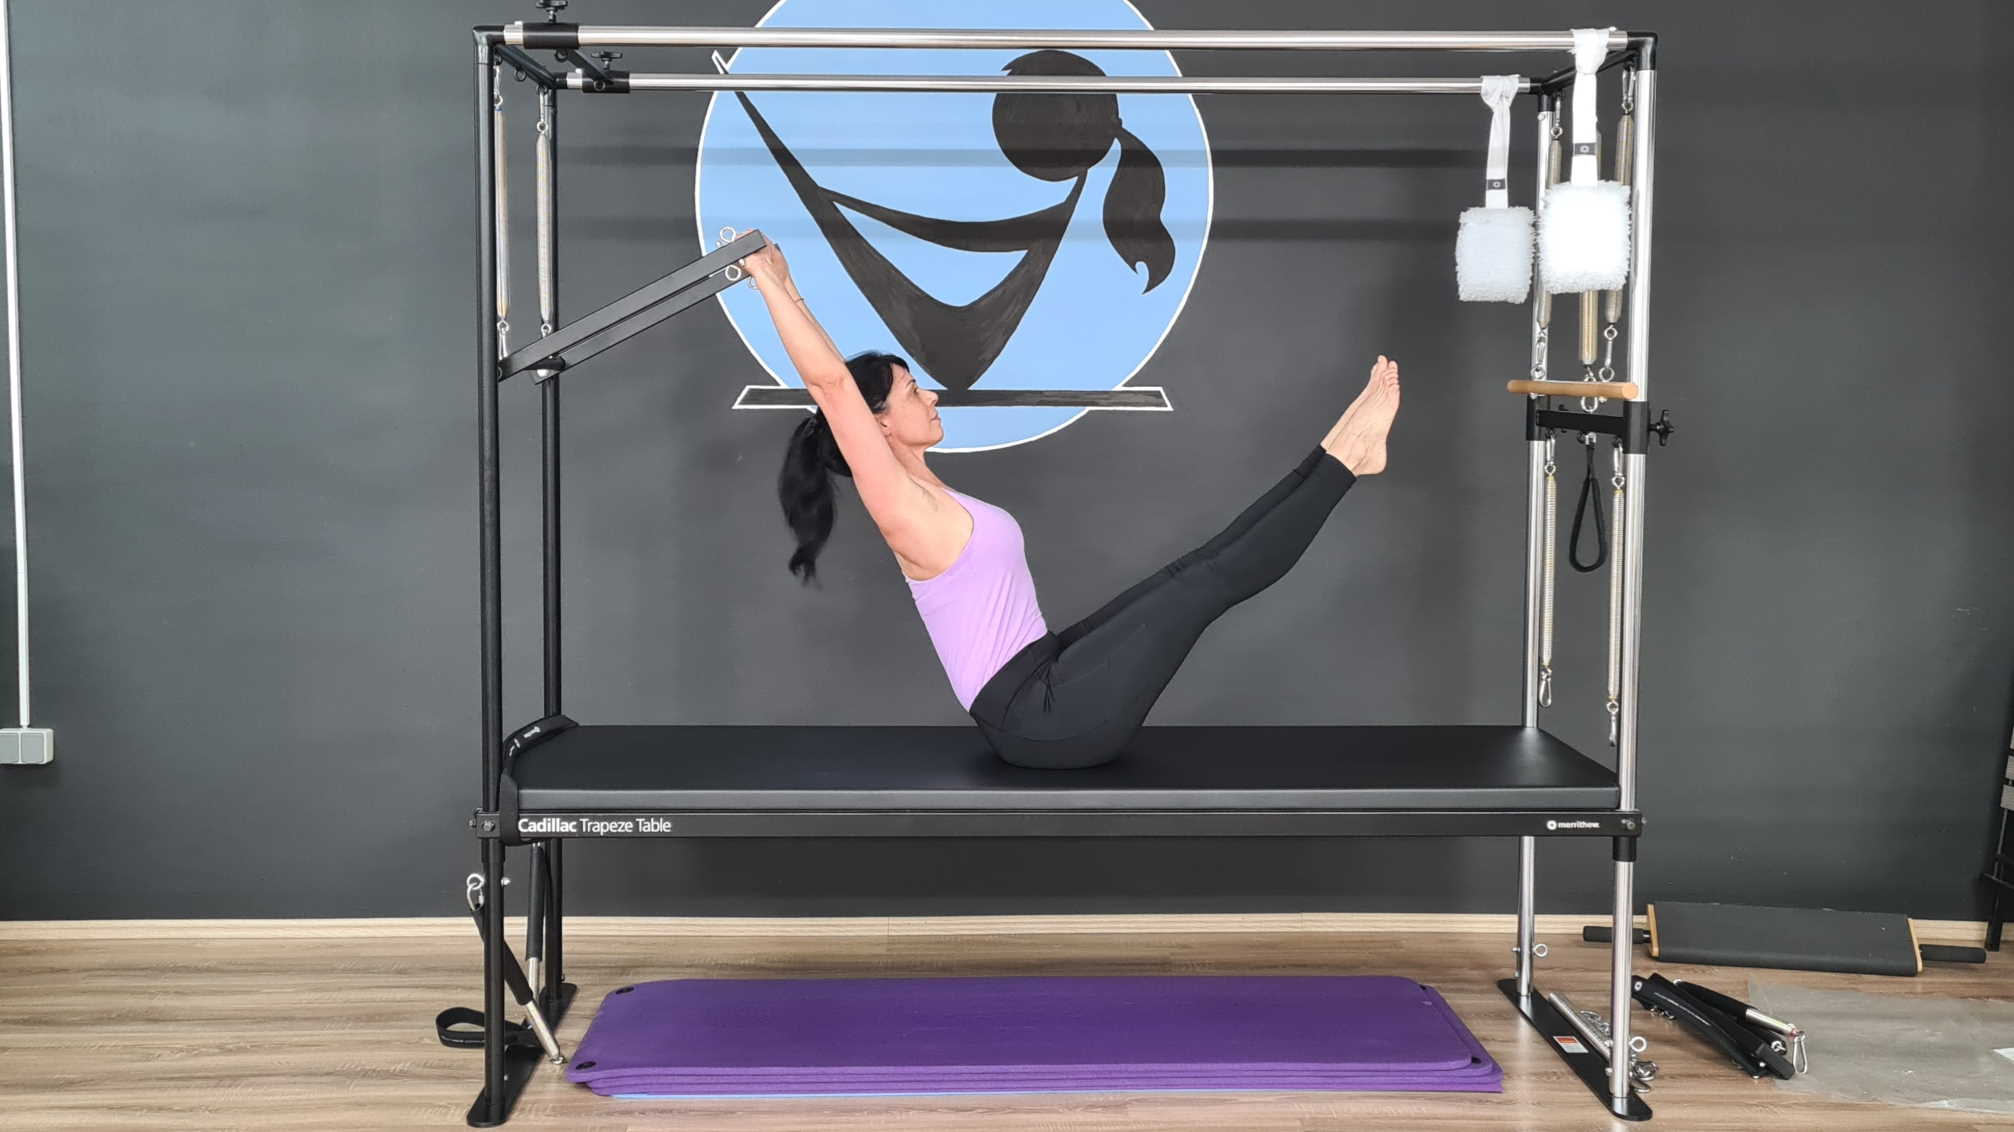 Pilatesom do zdravlja: možemo li vježbajući Pilates metodu ojačati mišiće trbuha?